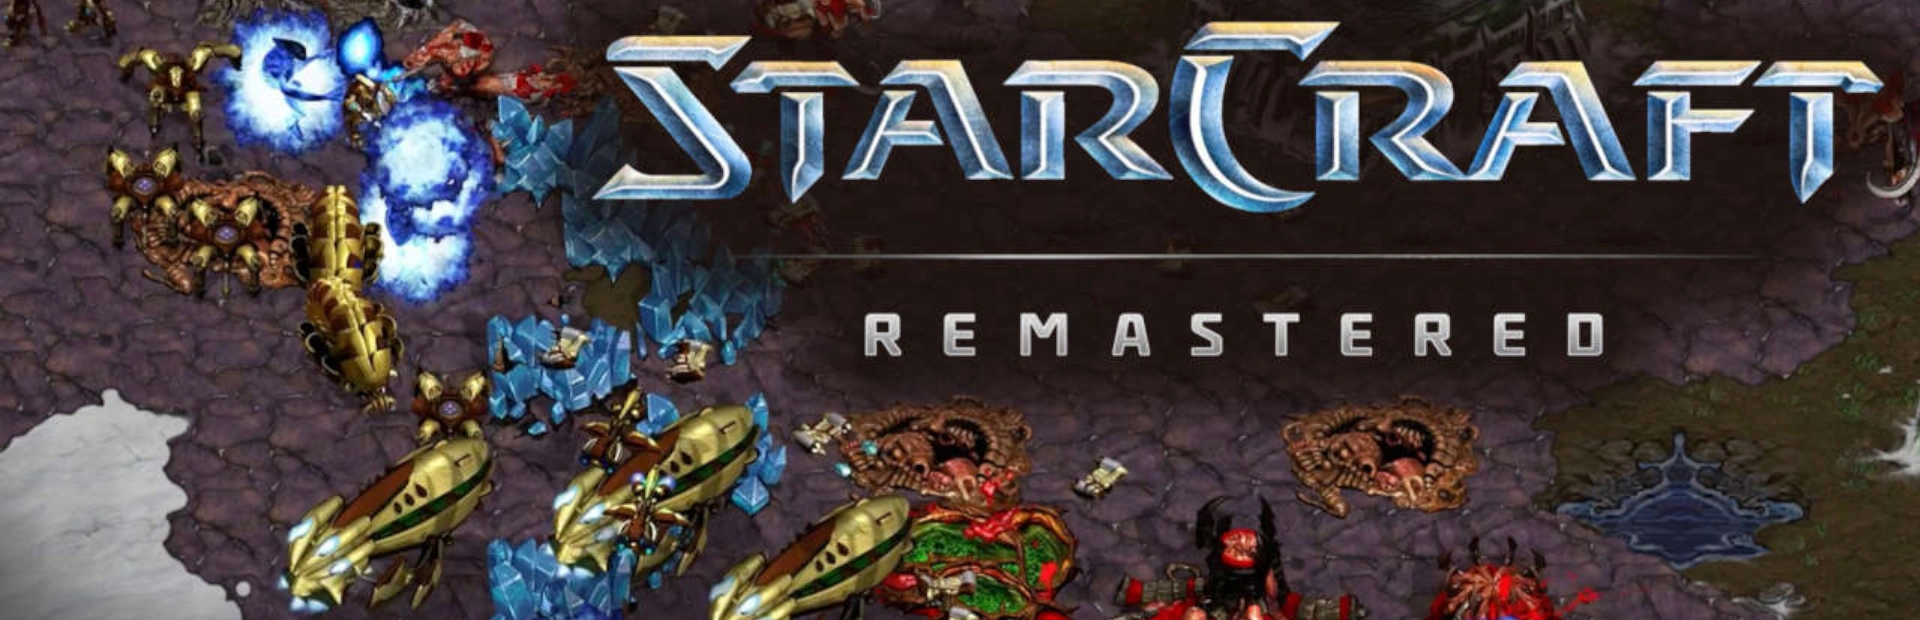 دانلود بازی StarCraft Remastered برای کامپیوتر | گیمباتو